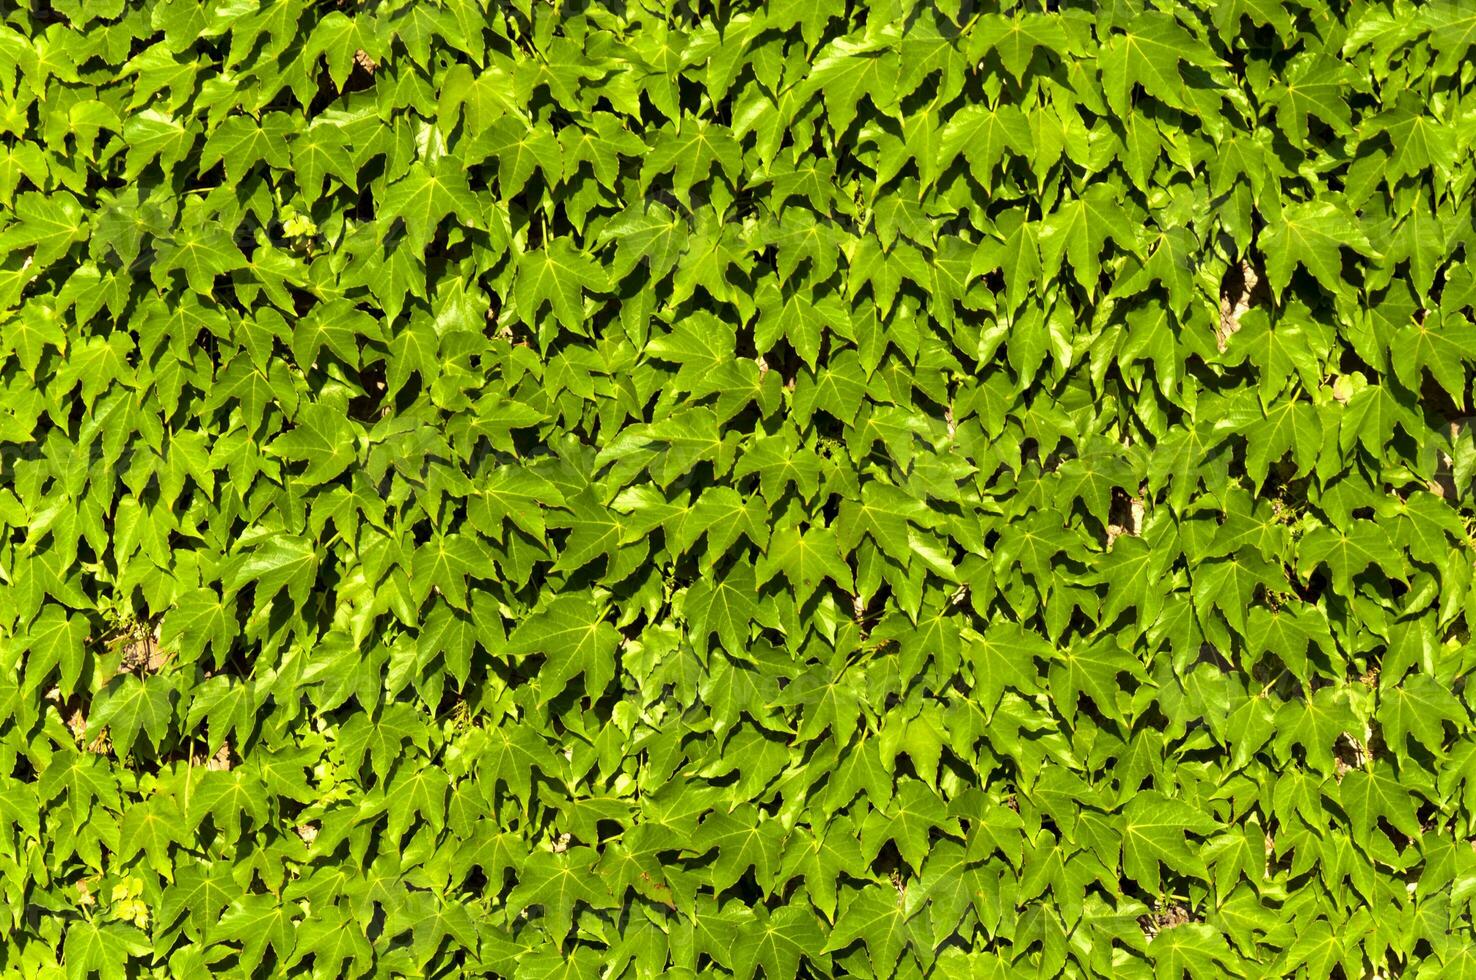 sfondo di foglie verdi foto